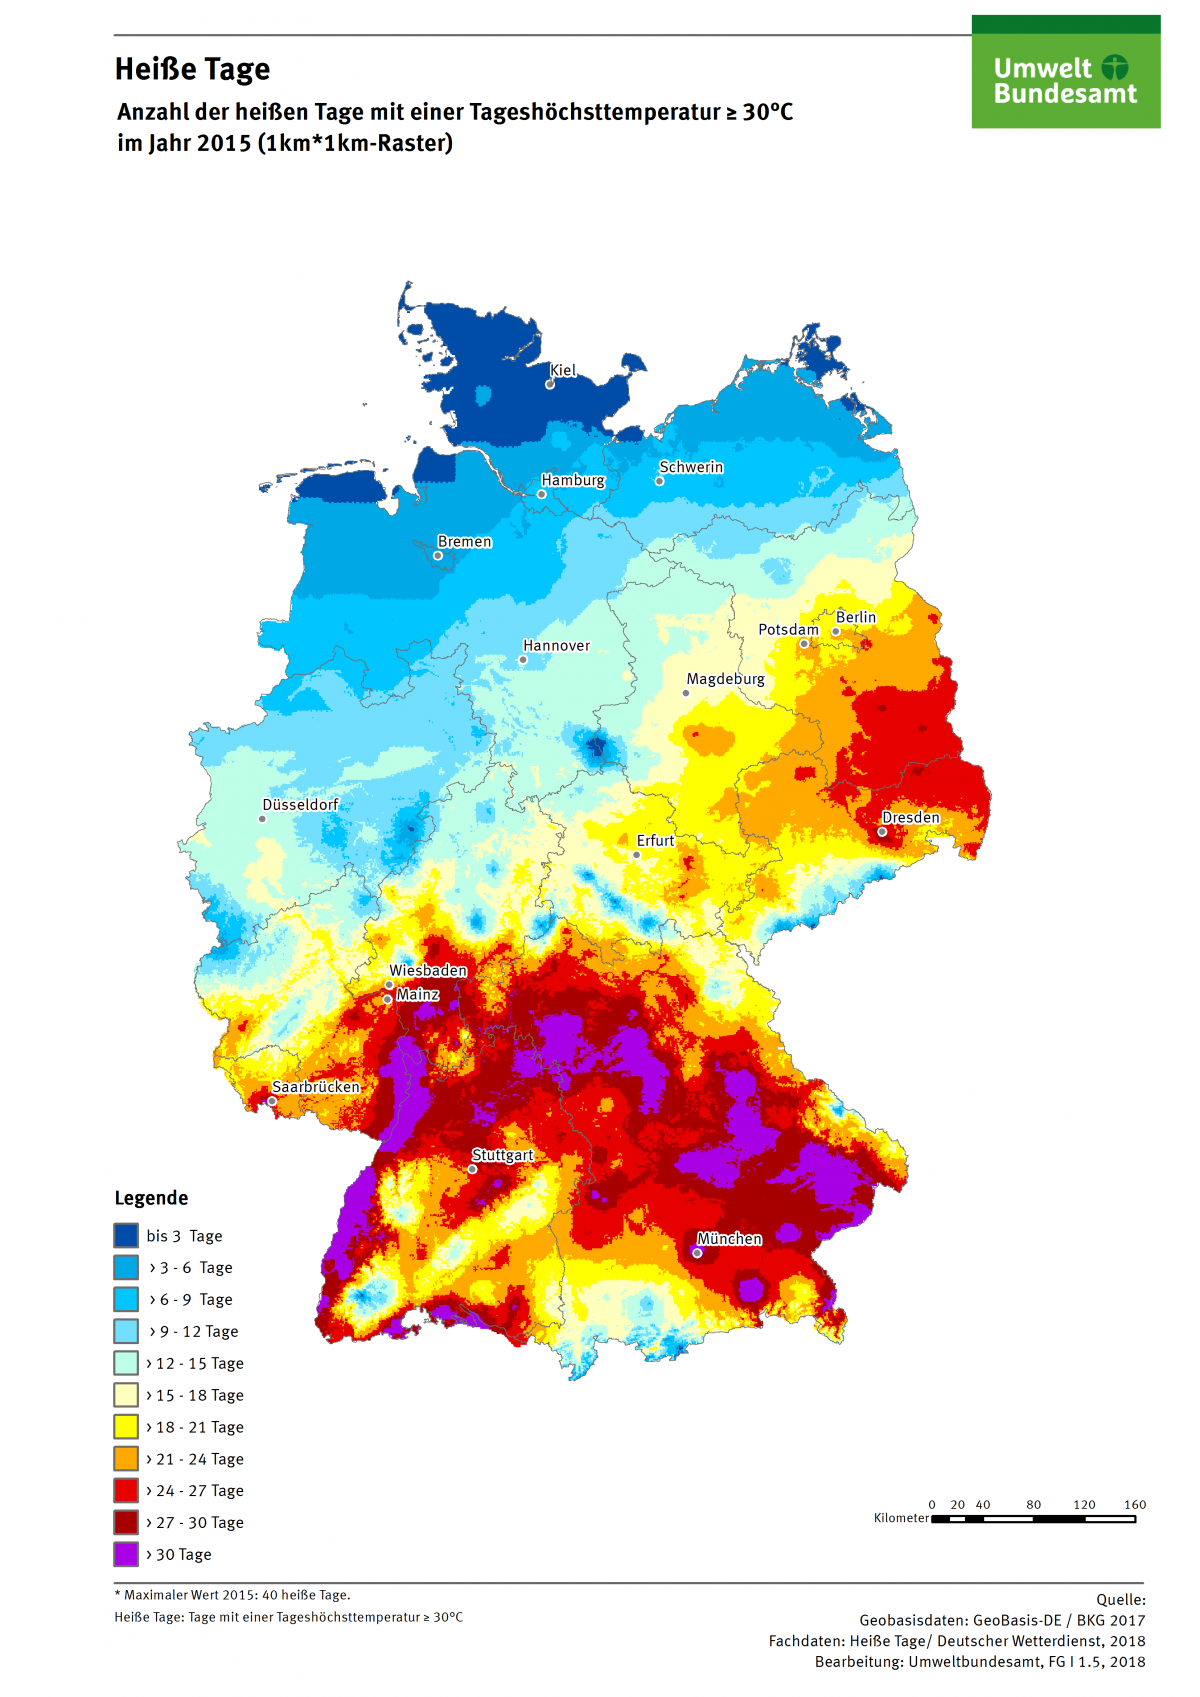 Die Karte zeigt die Anzahl Heißer Tage in Deutschland im Jahr 2015. Maximal gab es in diesem Jahr 40 Heiße Tage in Deutschland.